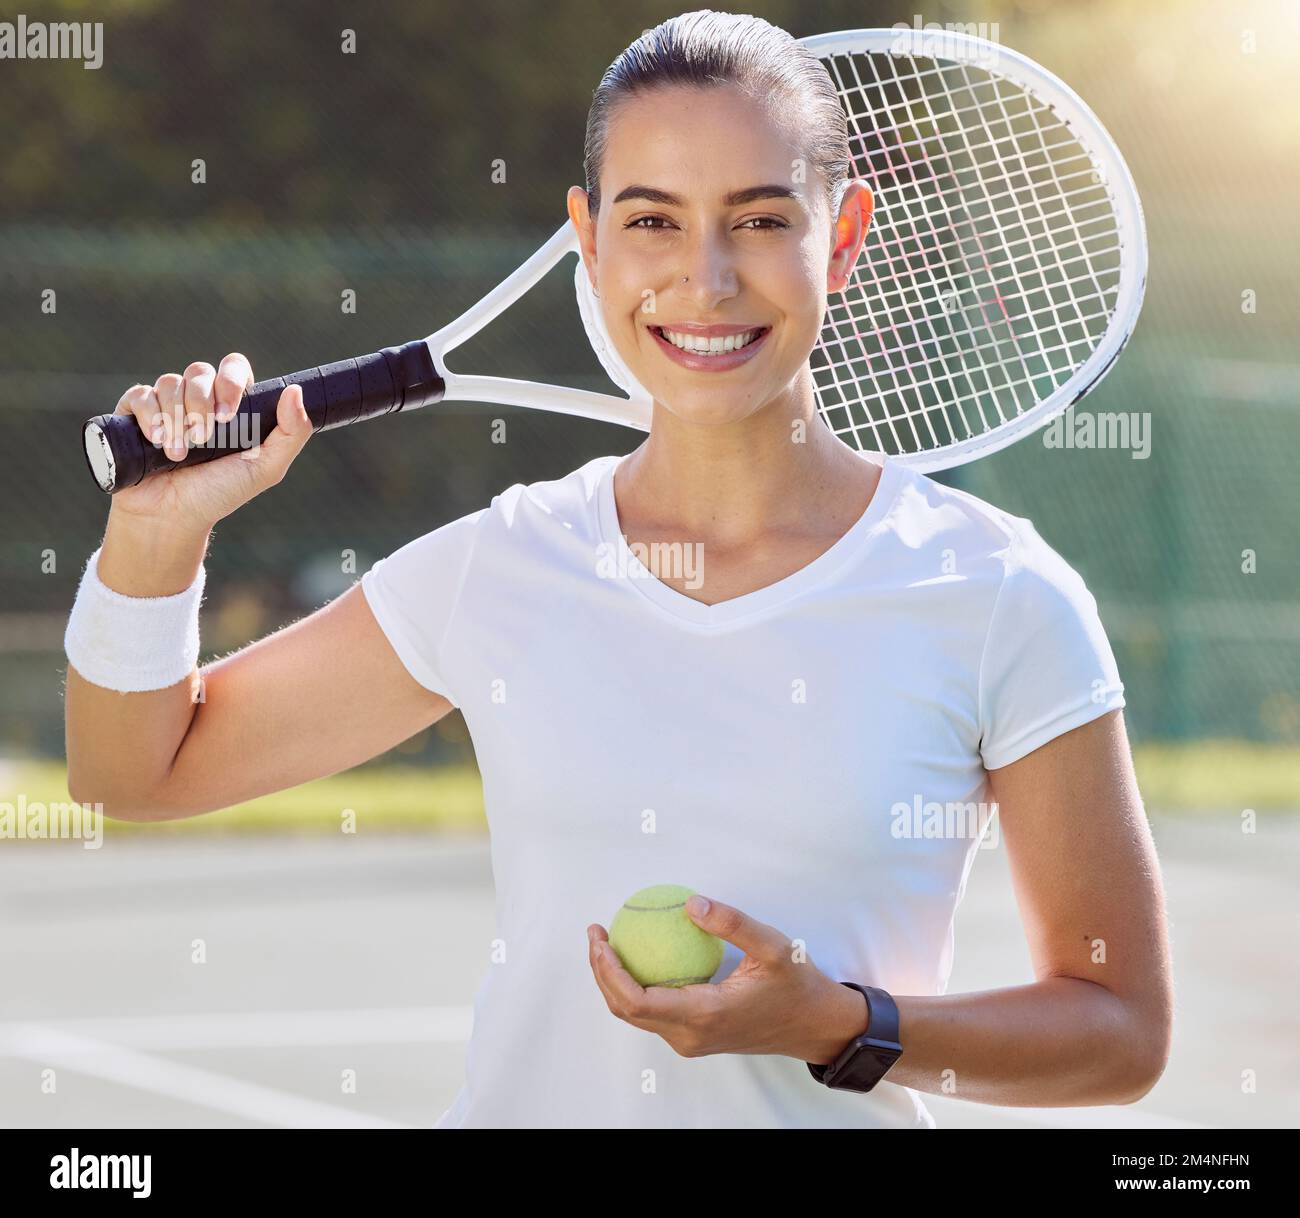 Tennis sport, game portrait e allenamento femminile per la salute sul campo, felice di un evento sportivo professionale e sorridere alla competizione all'aperto. Giovane atleta Foto Stock